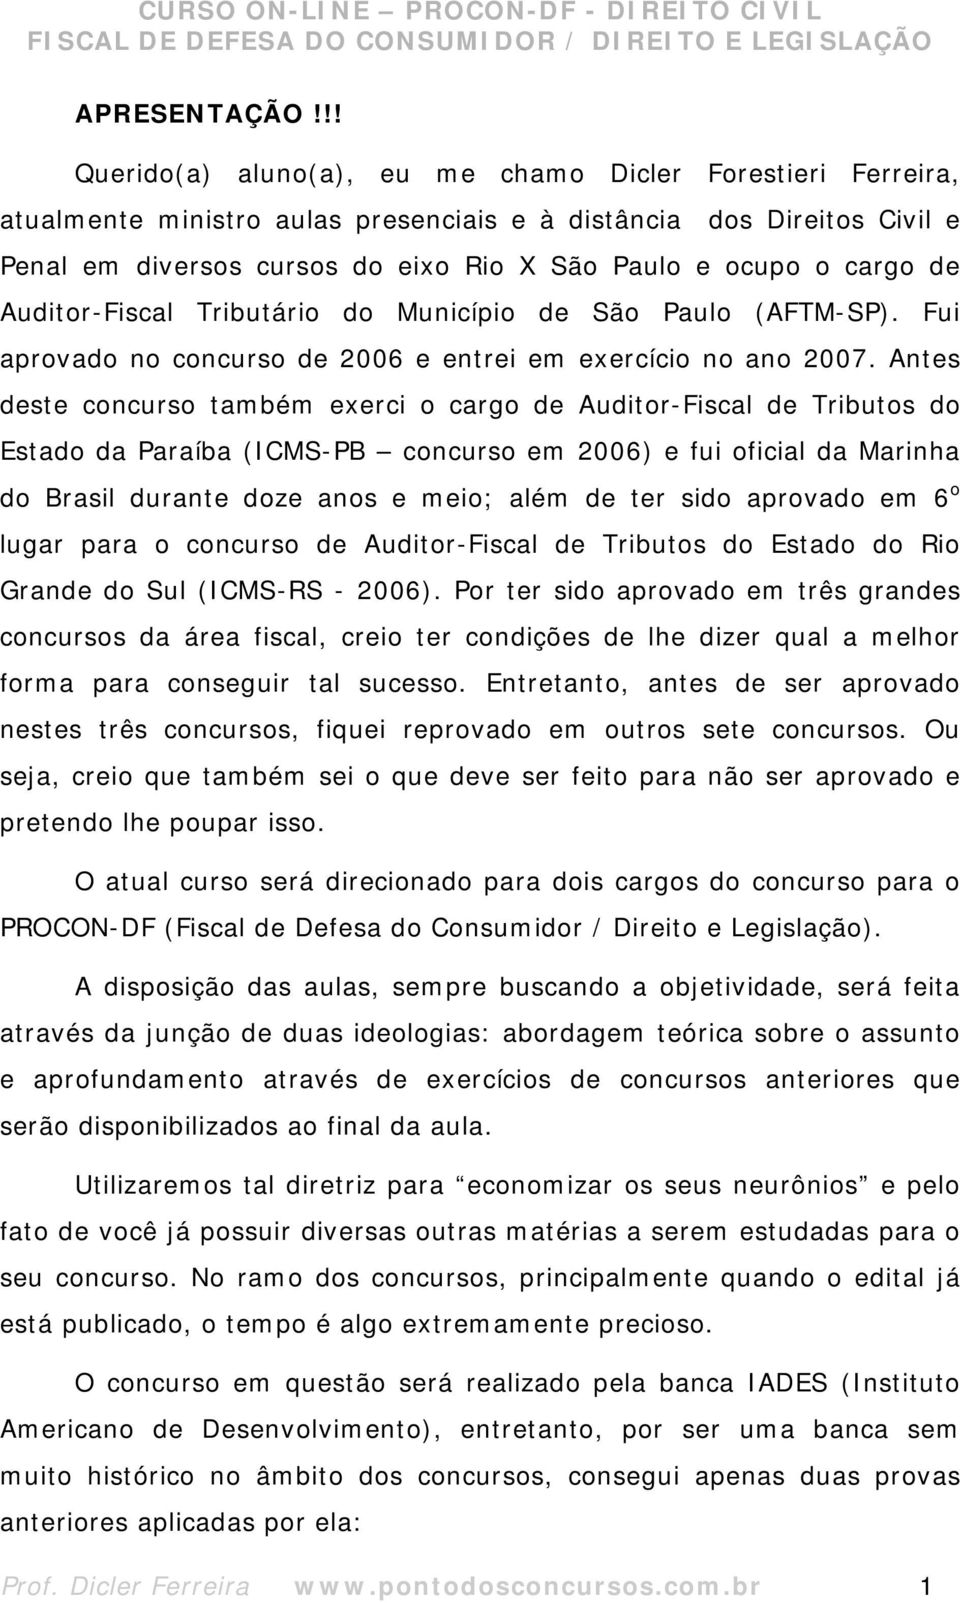 cargo de Auditor-Fiscal Tributário do Município de São Paulo (AFTM-SP). Fui aprovado no concurso de 2006 e entrei em exercício no ano 2007.